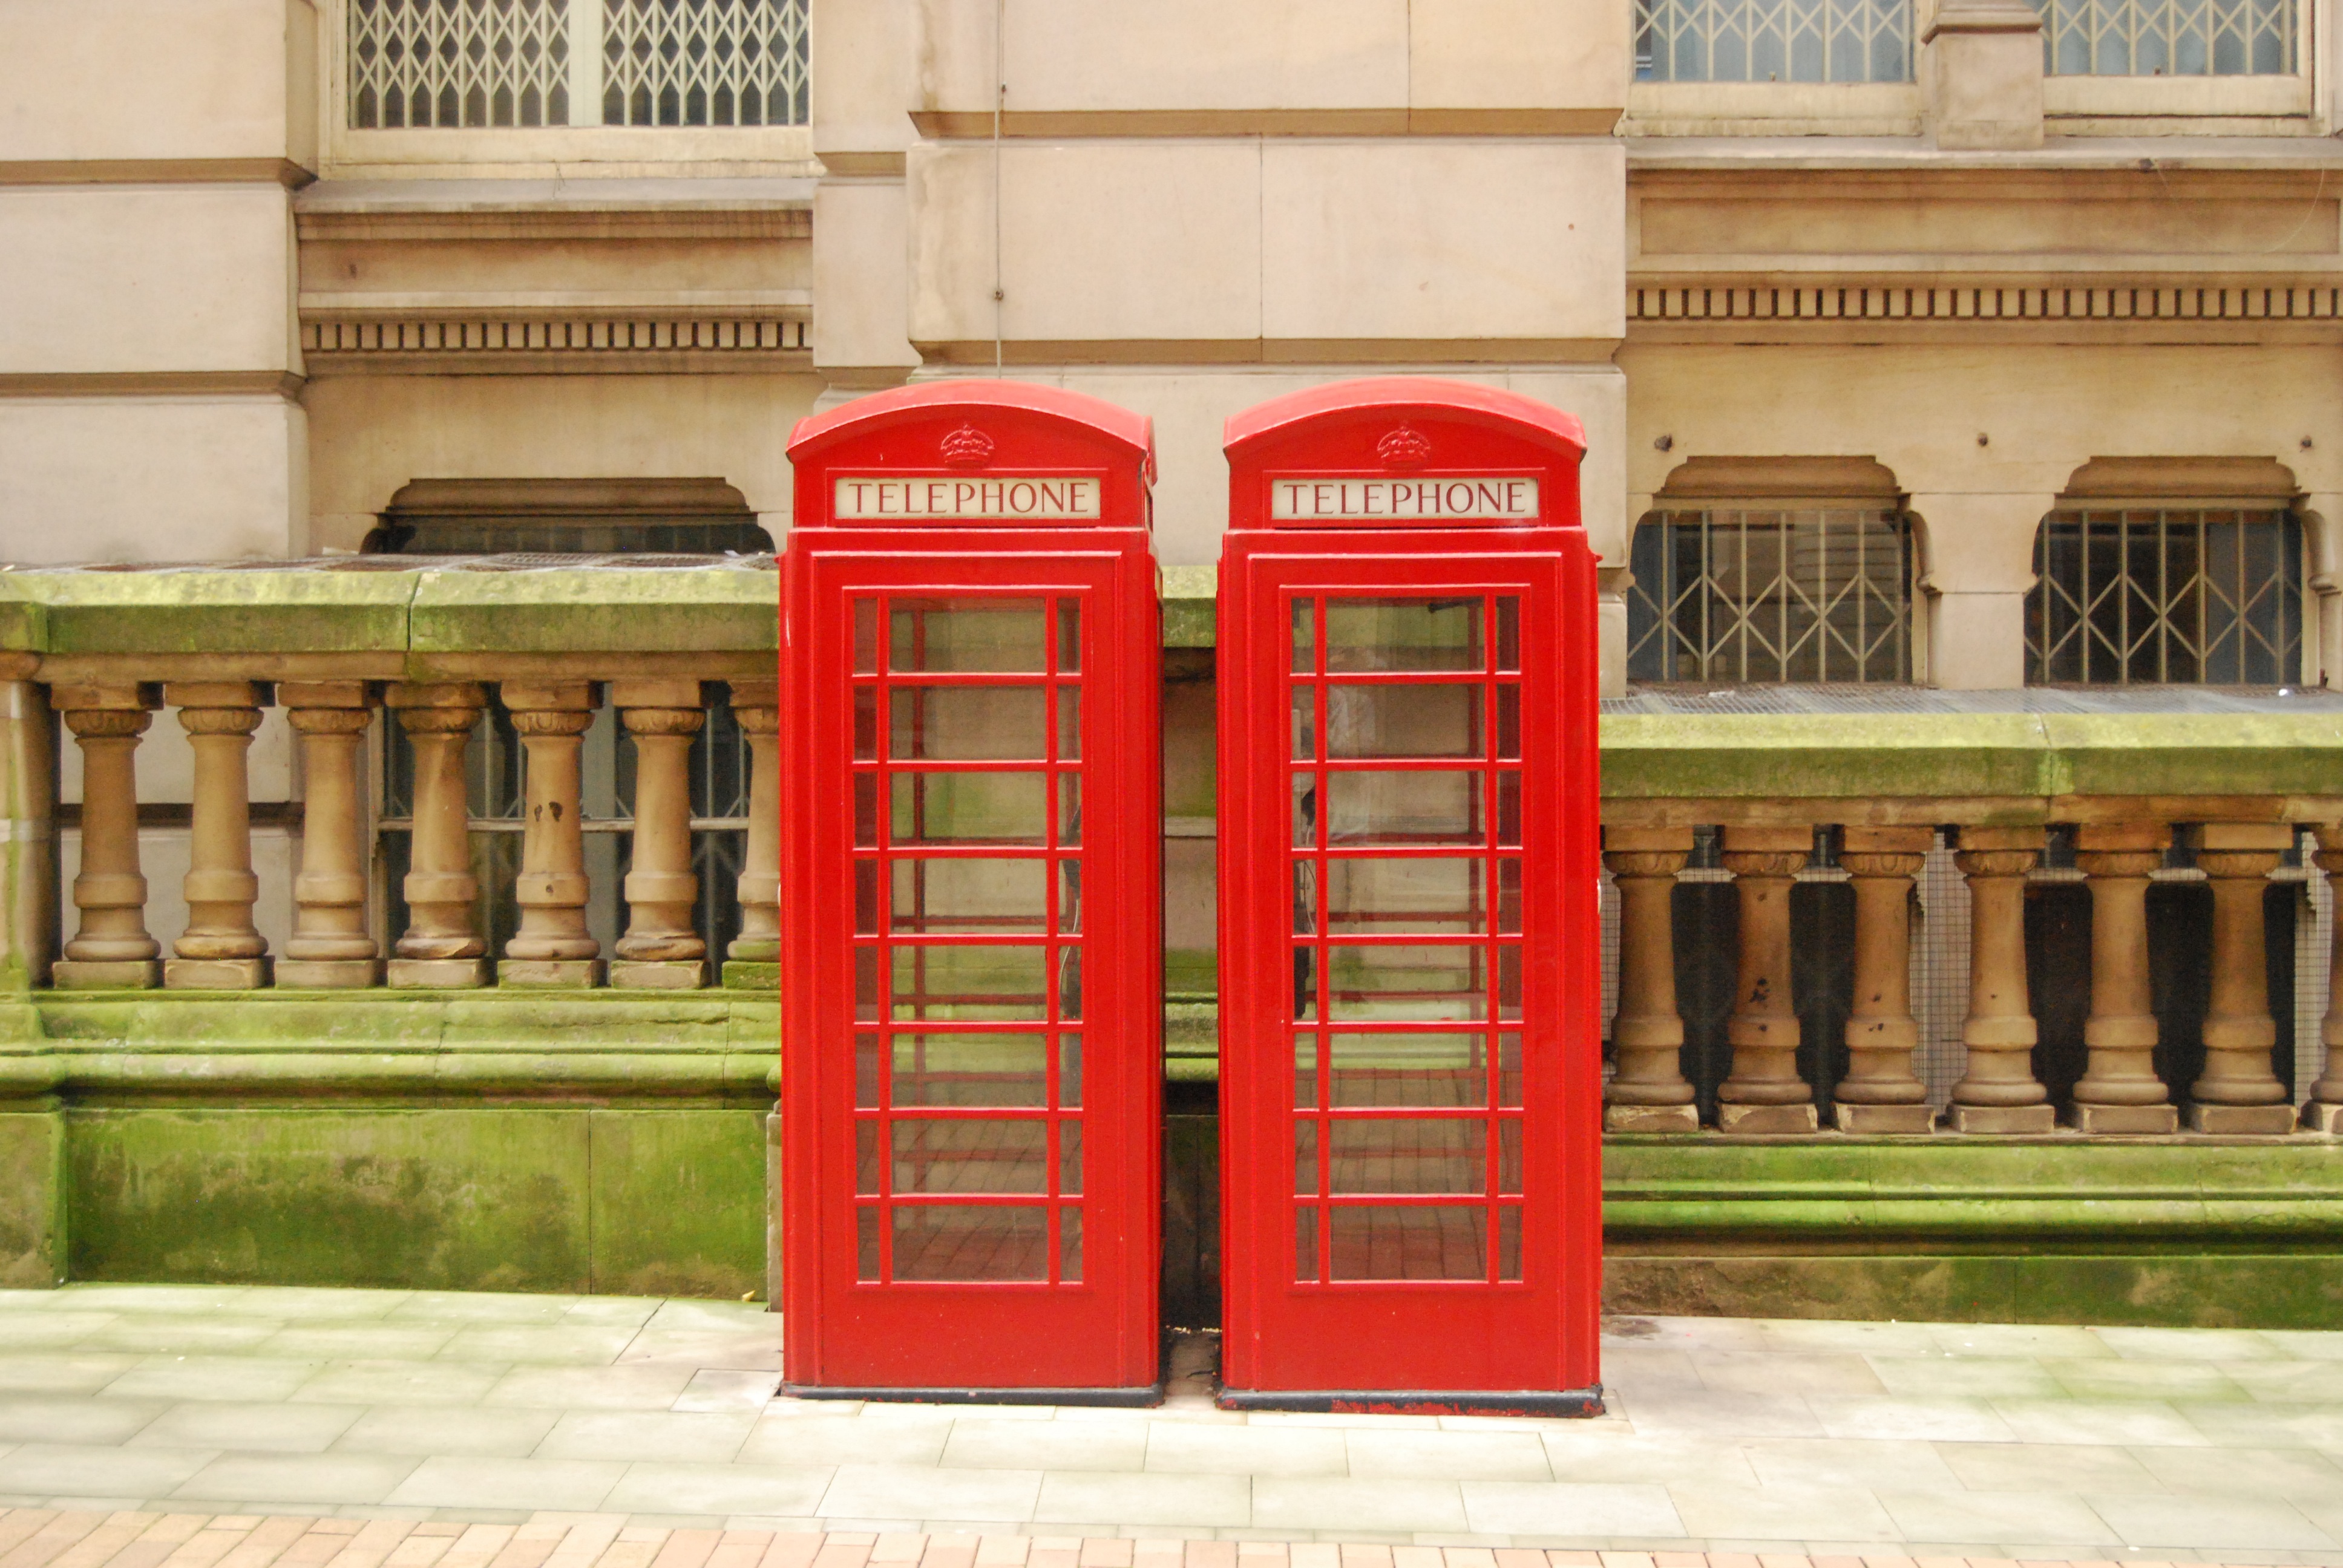 Британия телефон. Красная телефонная будка в Лондоне. Телефонная будка Англия. Телефонная будка в Великобритании. Достопримечательности Лондона телефонная будка.